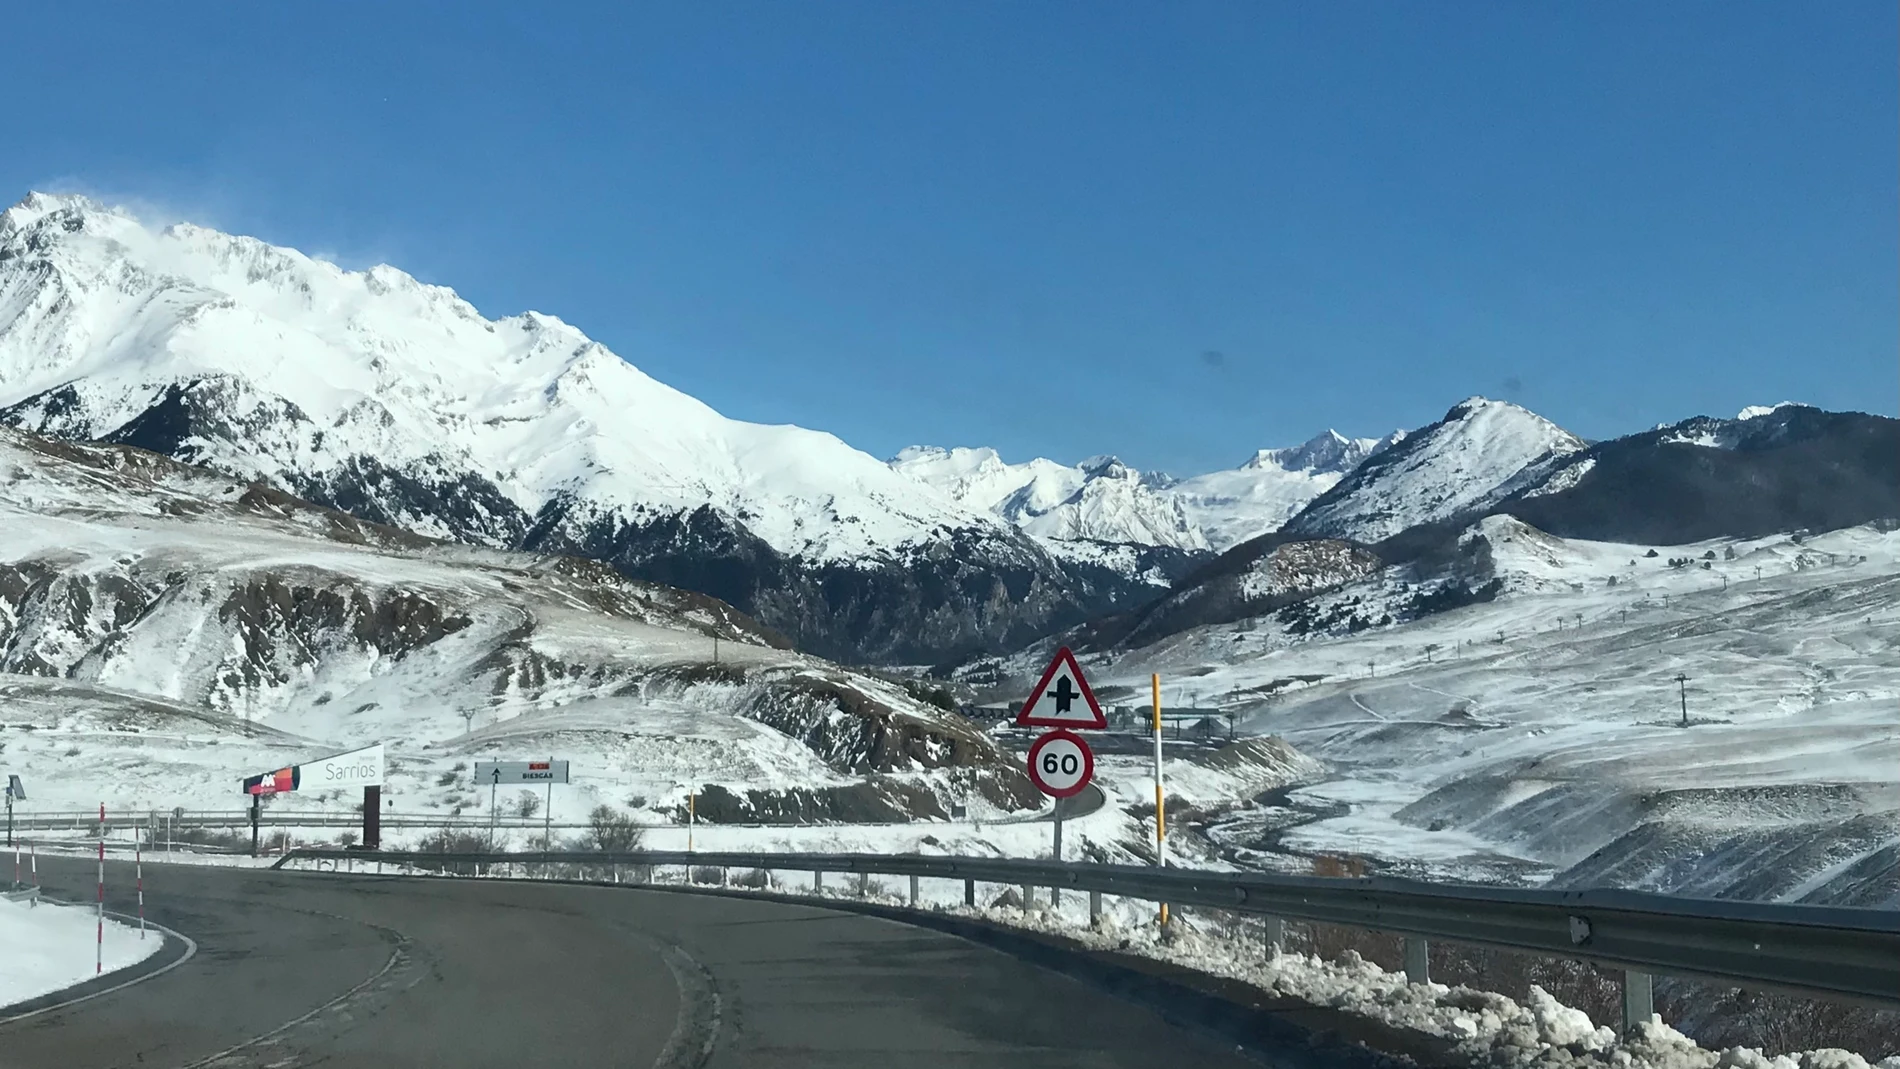 Carretera en paisaje nevado con cielo azul